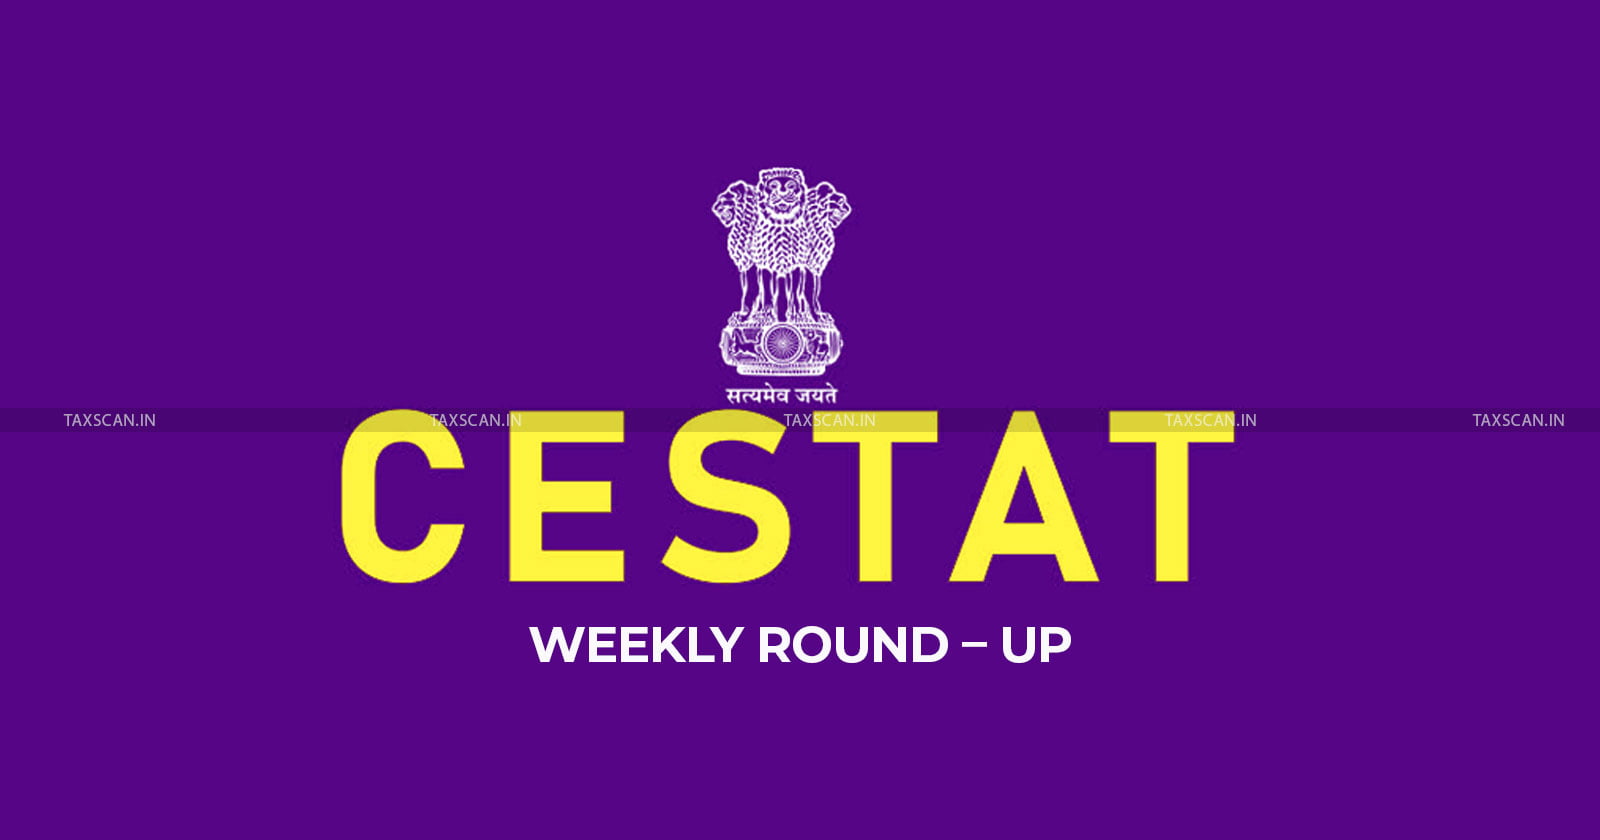 cestat weekly round up - cestat round up - weekly round up - cestat weekly - excise - customs - taxscan